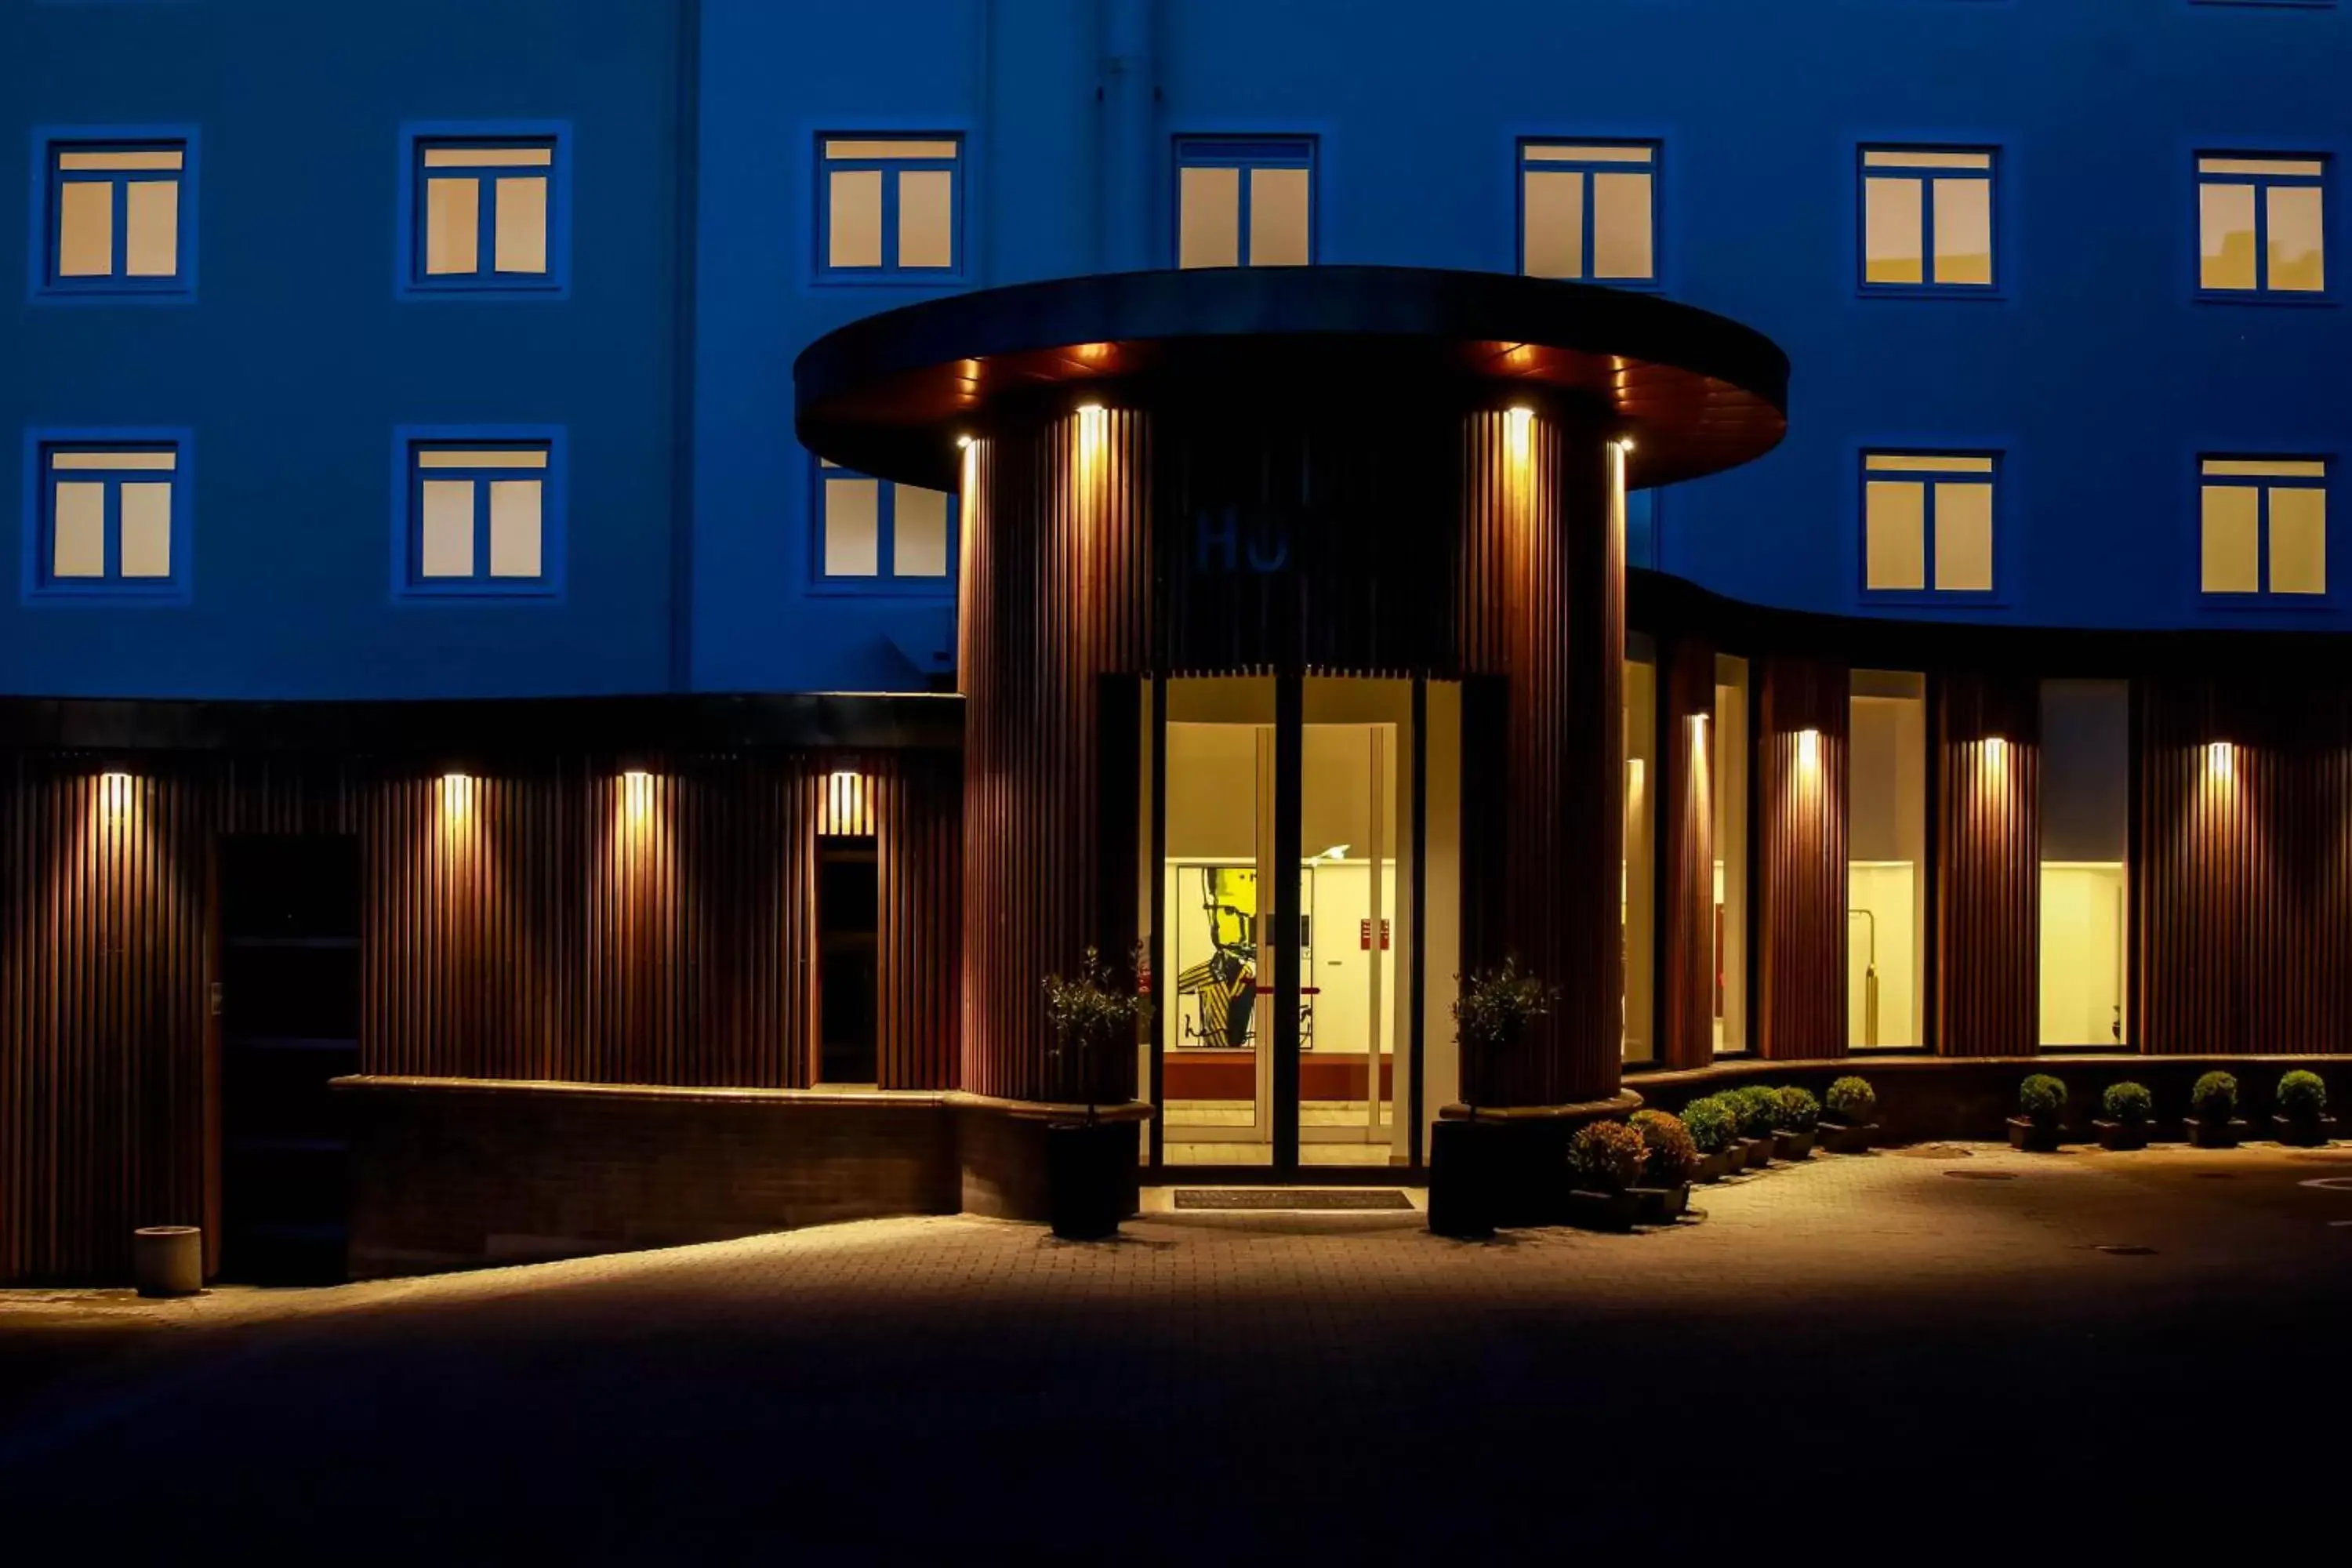 Property Building in Best Western Plus Hotel Svendborg